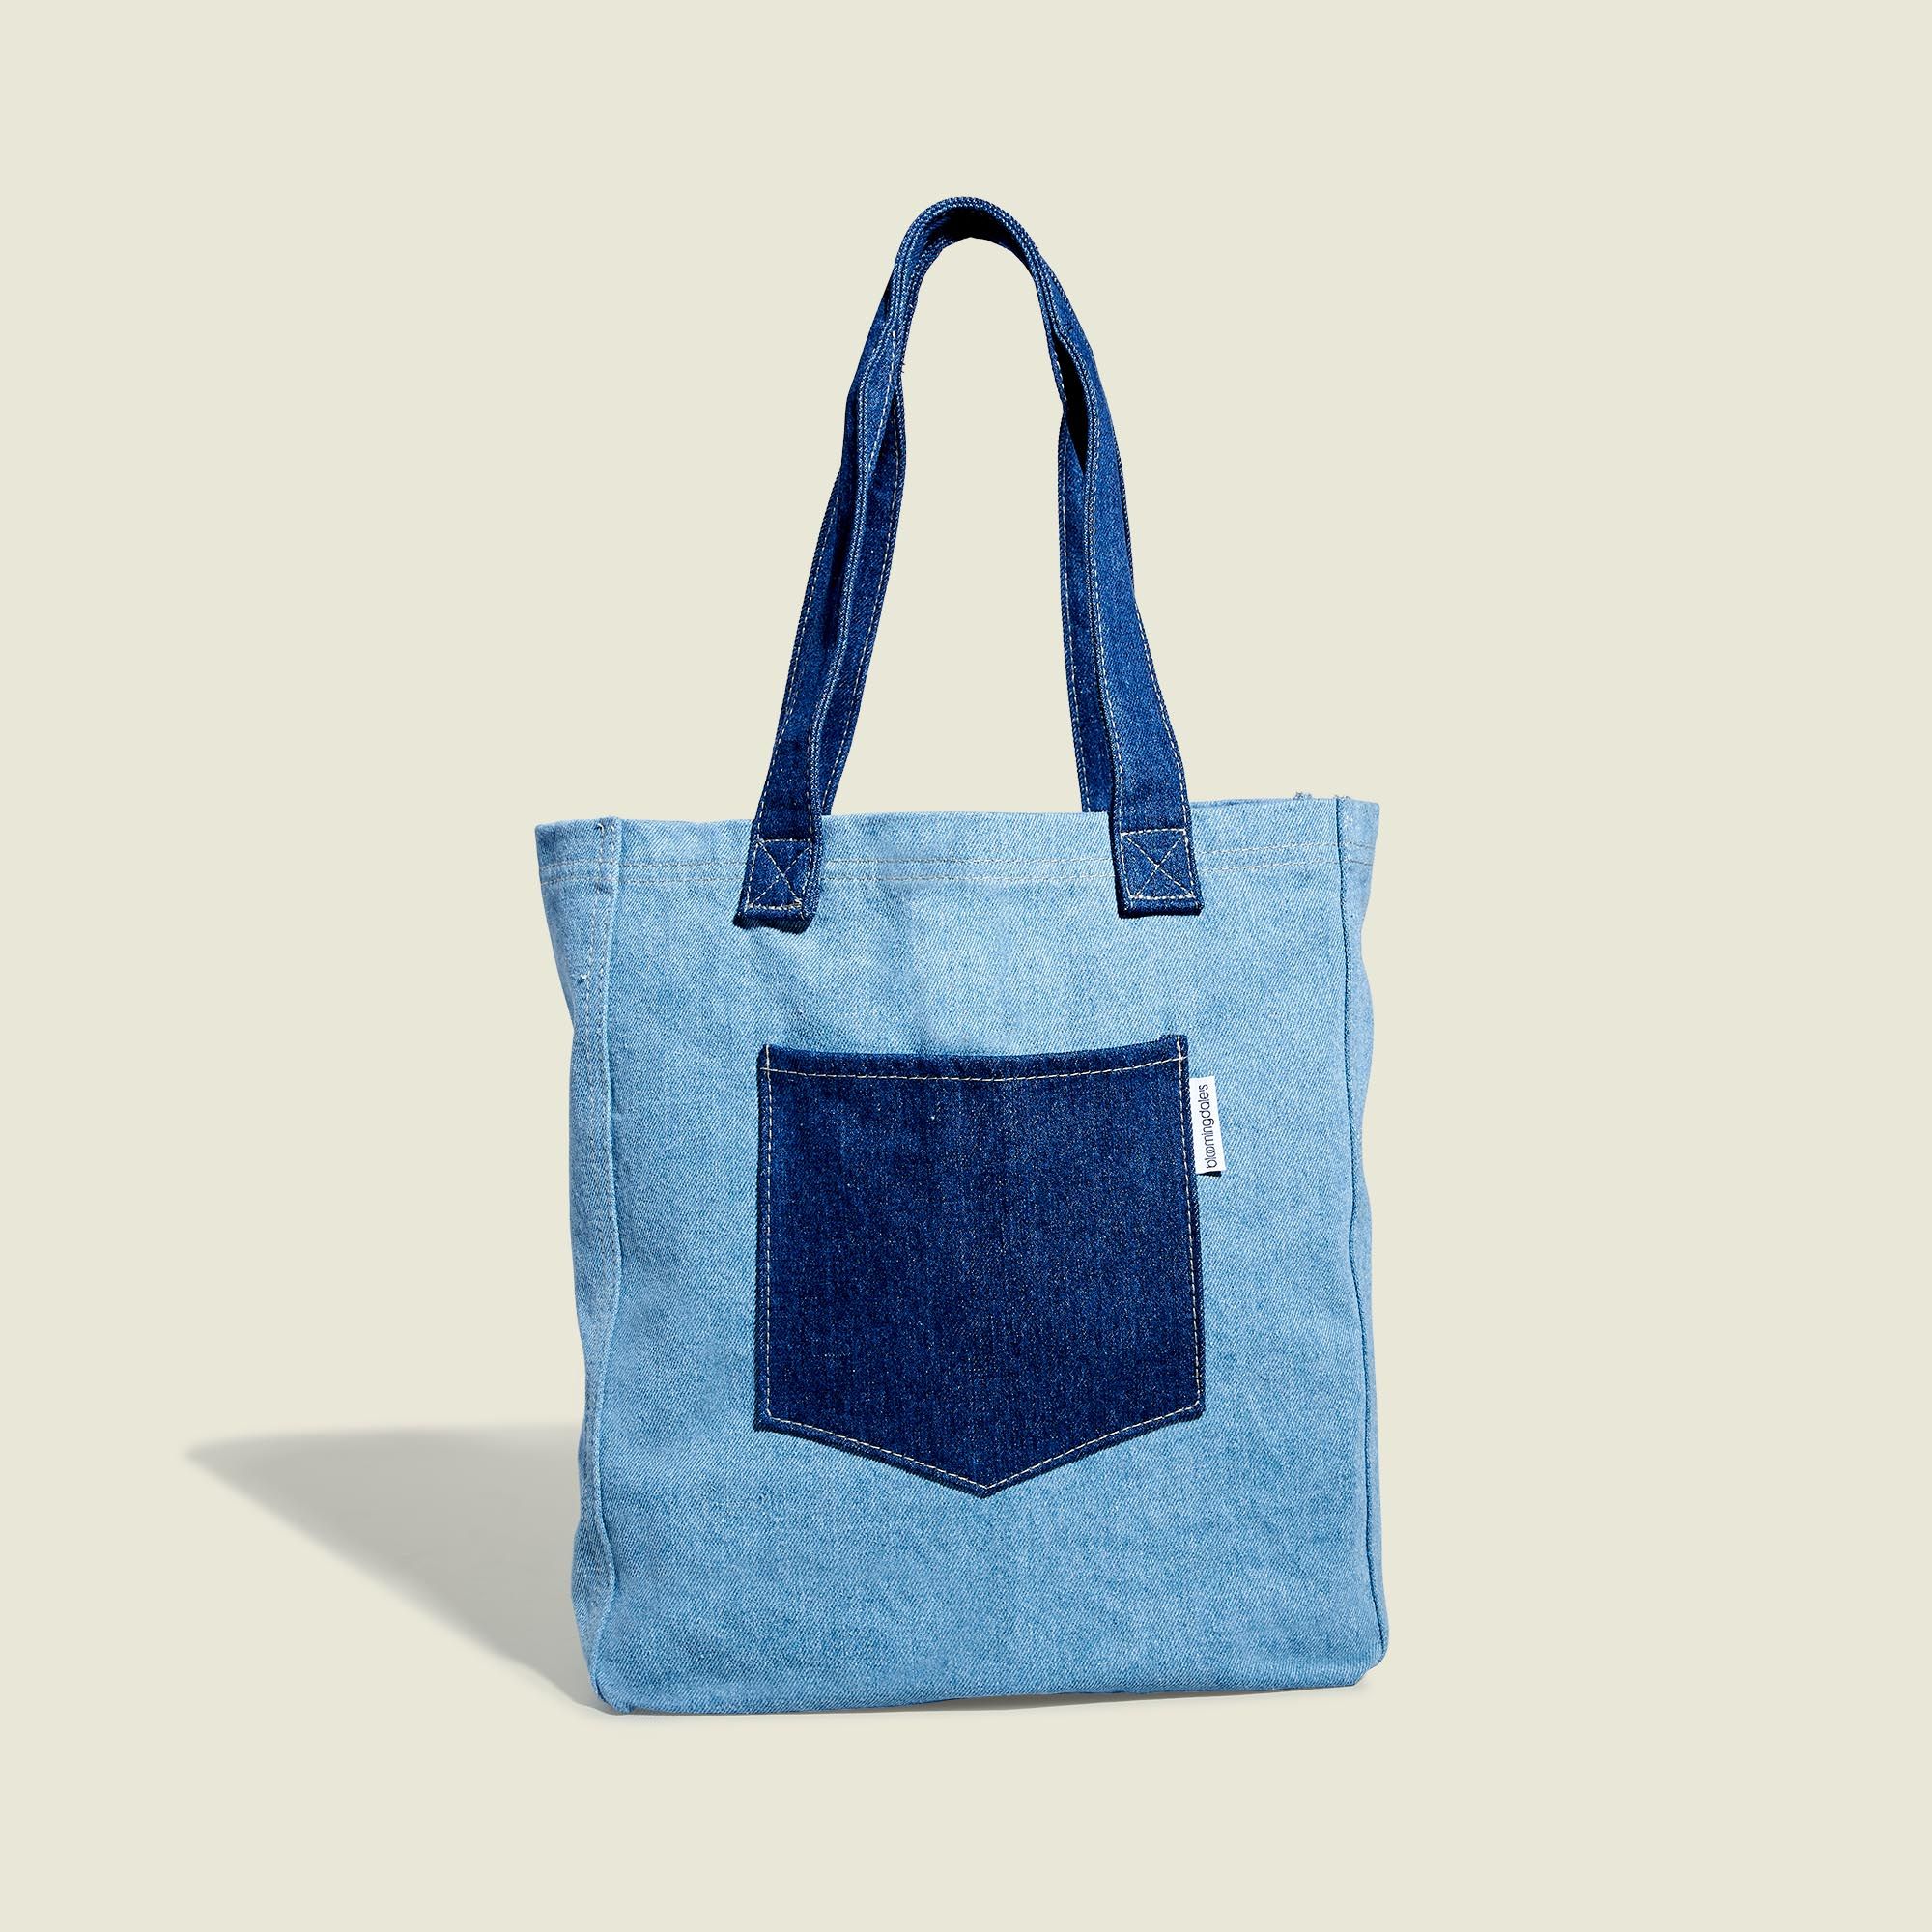 Bloomingdale's Blue Tote Bags